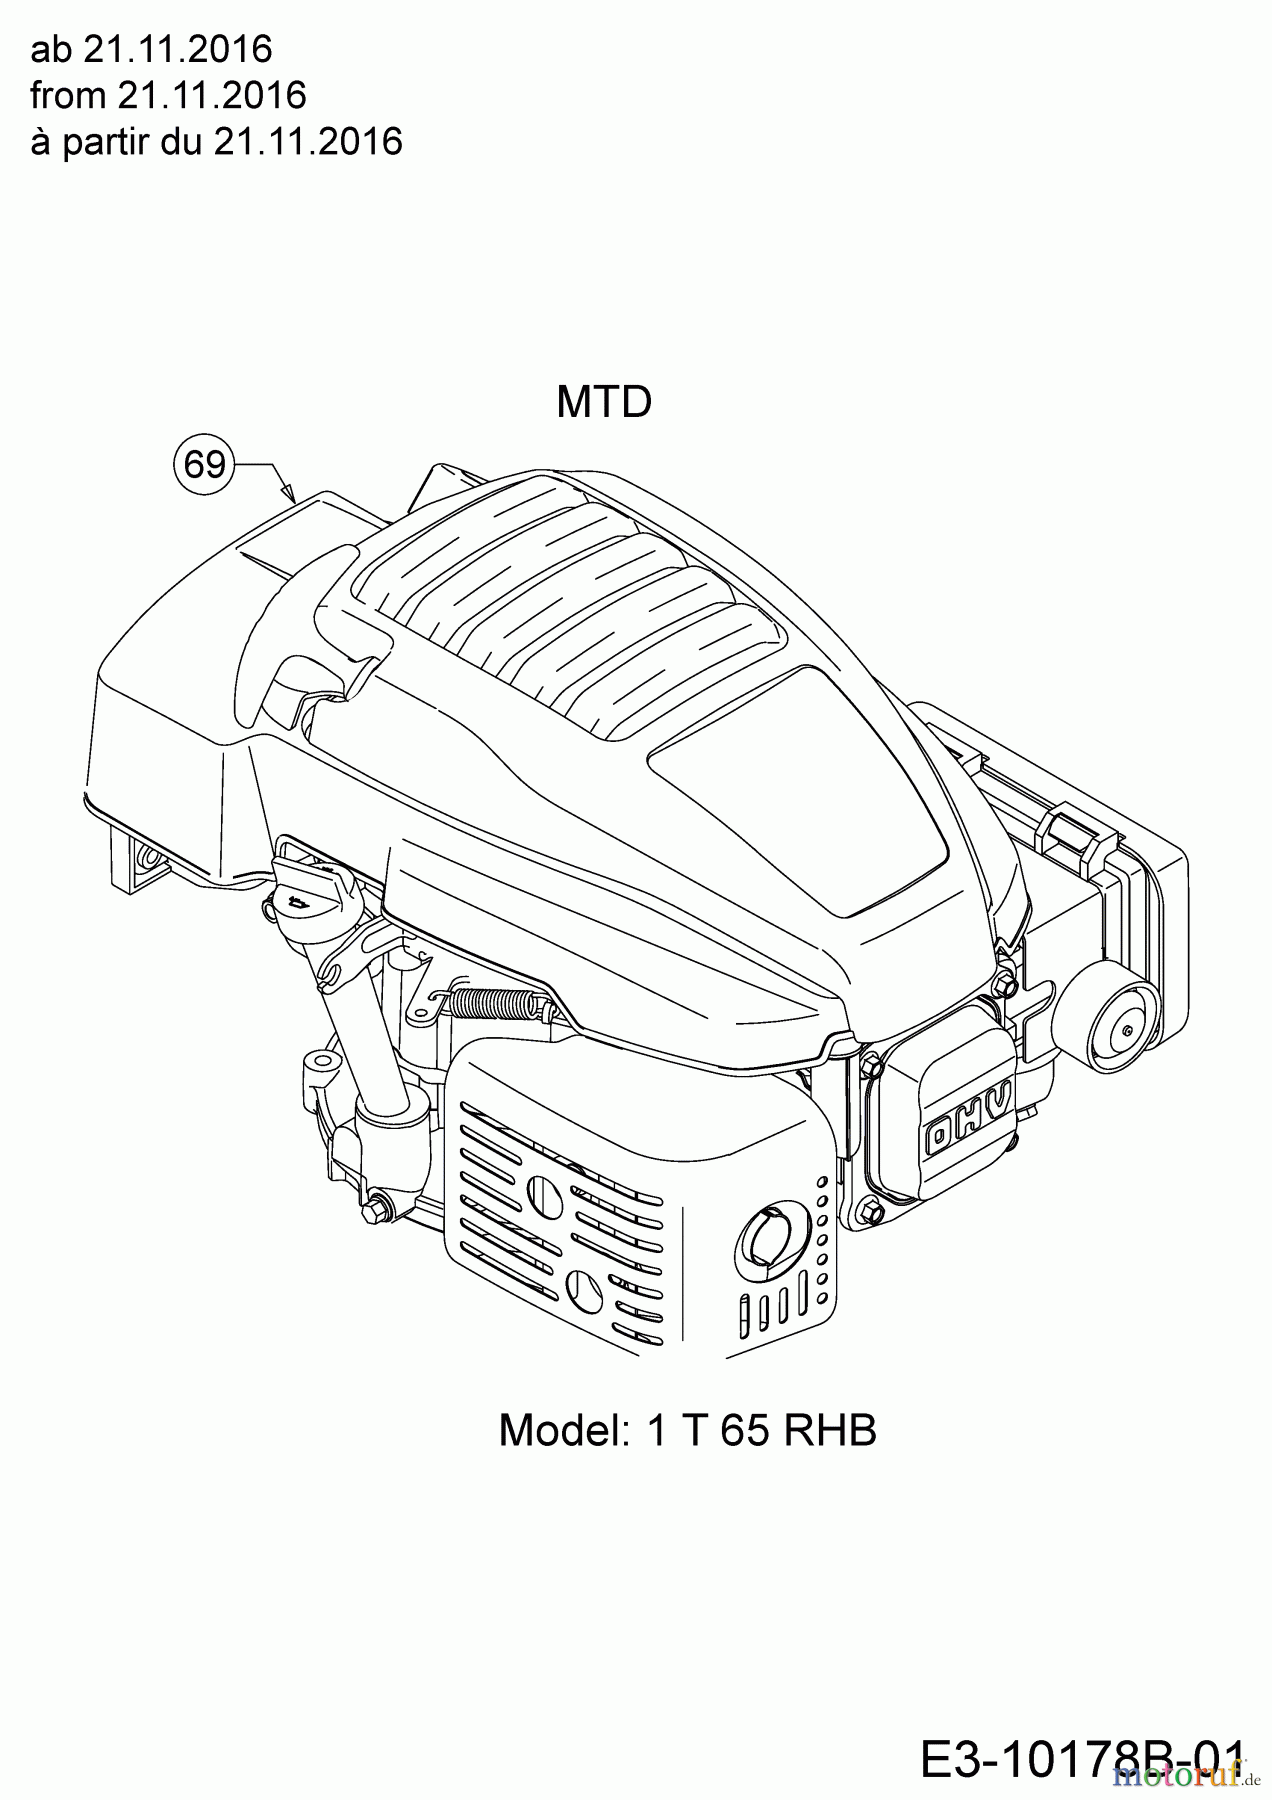  MTD Motormäher mit Antrieb Smart 46 SPOHW 12A-TBS4600  (2018) Motor MTD ab 21.11.2016